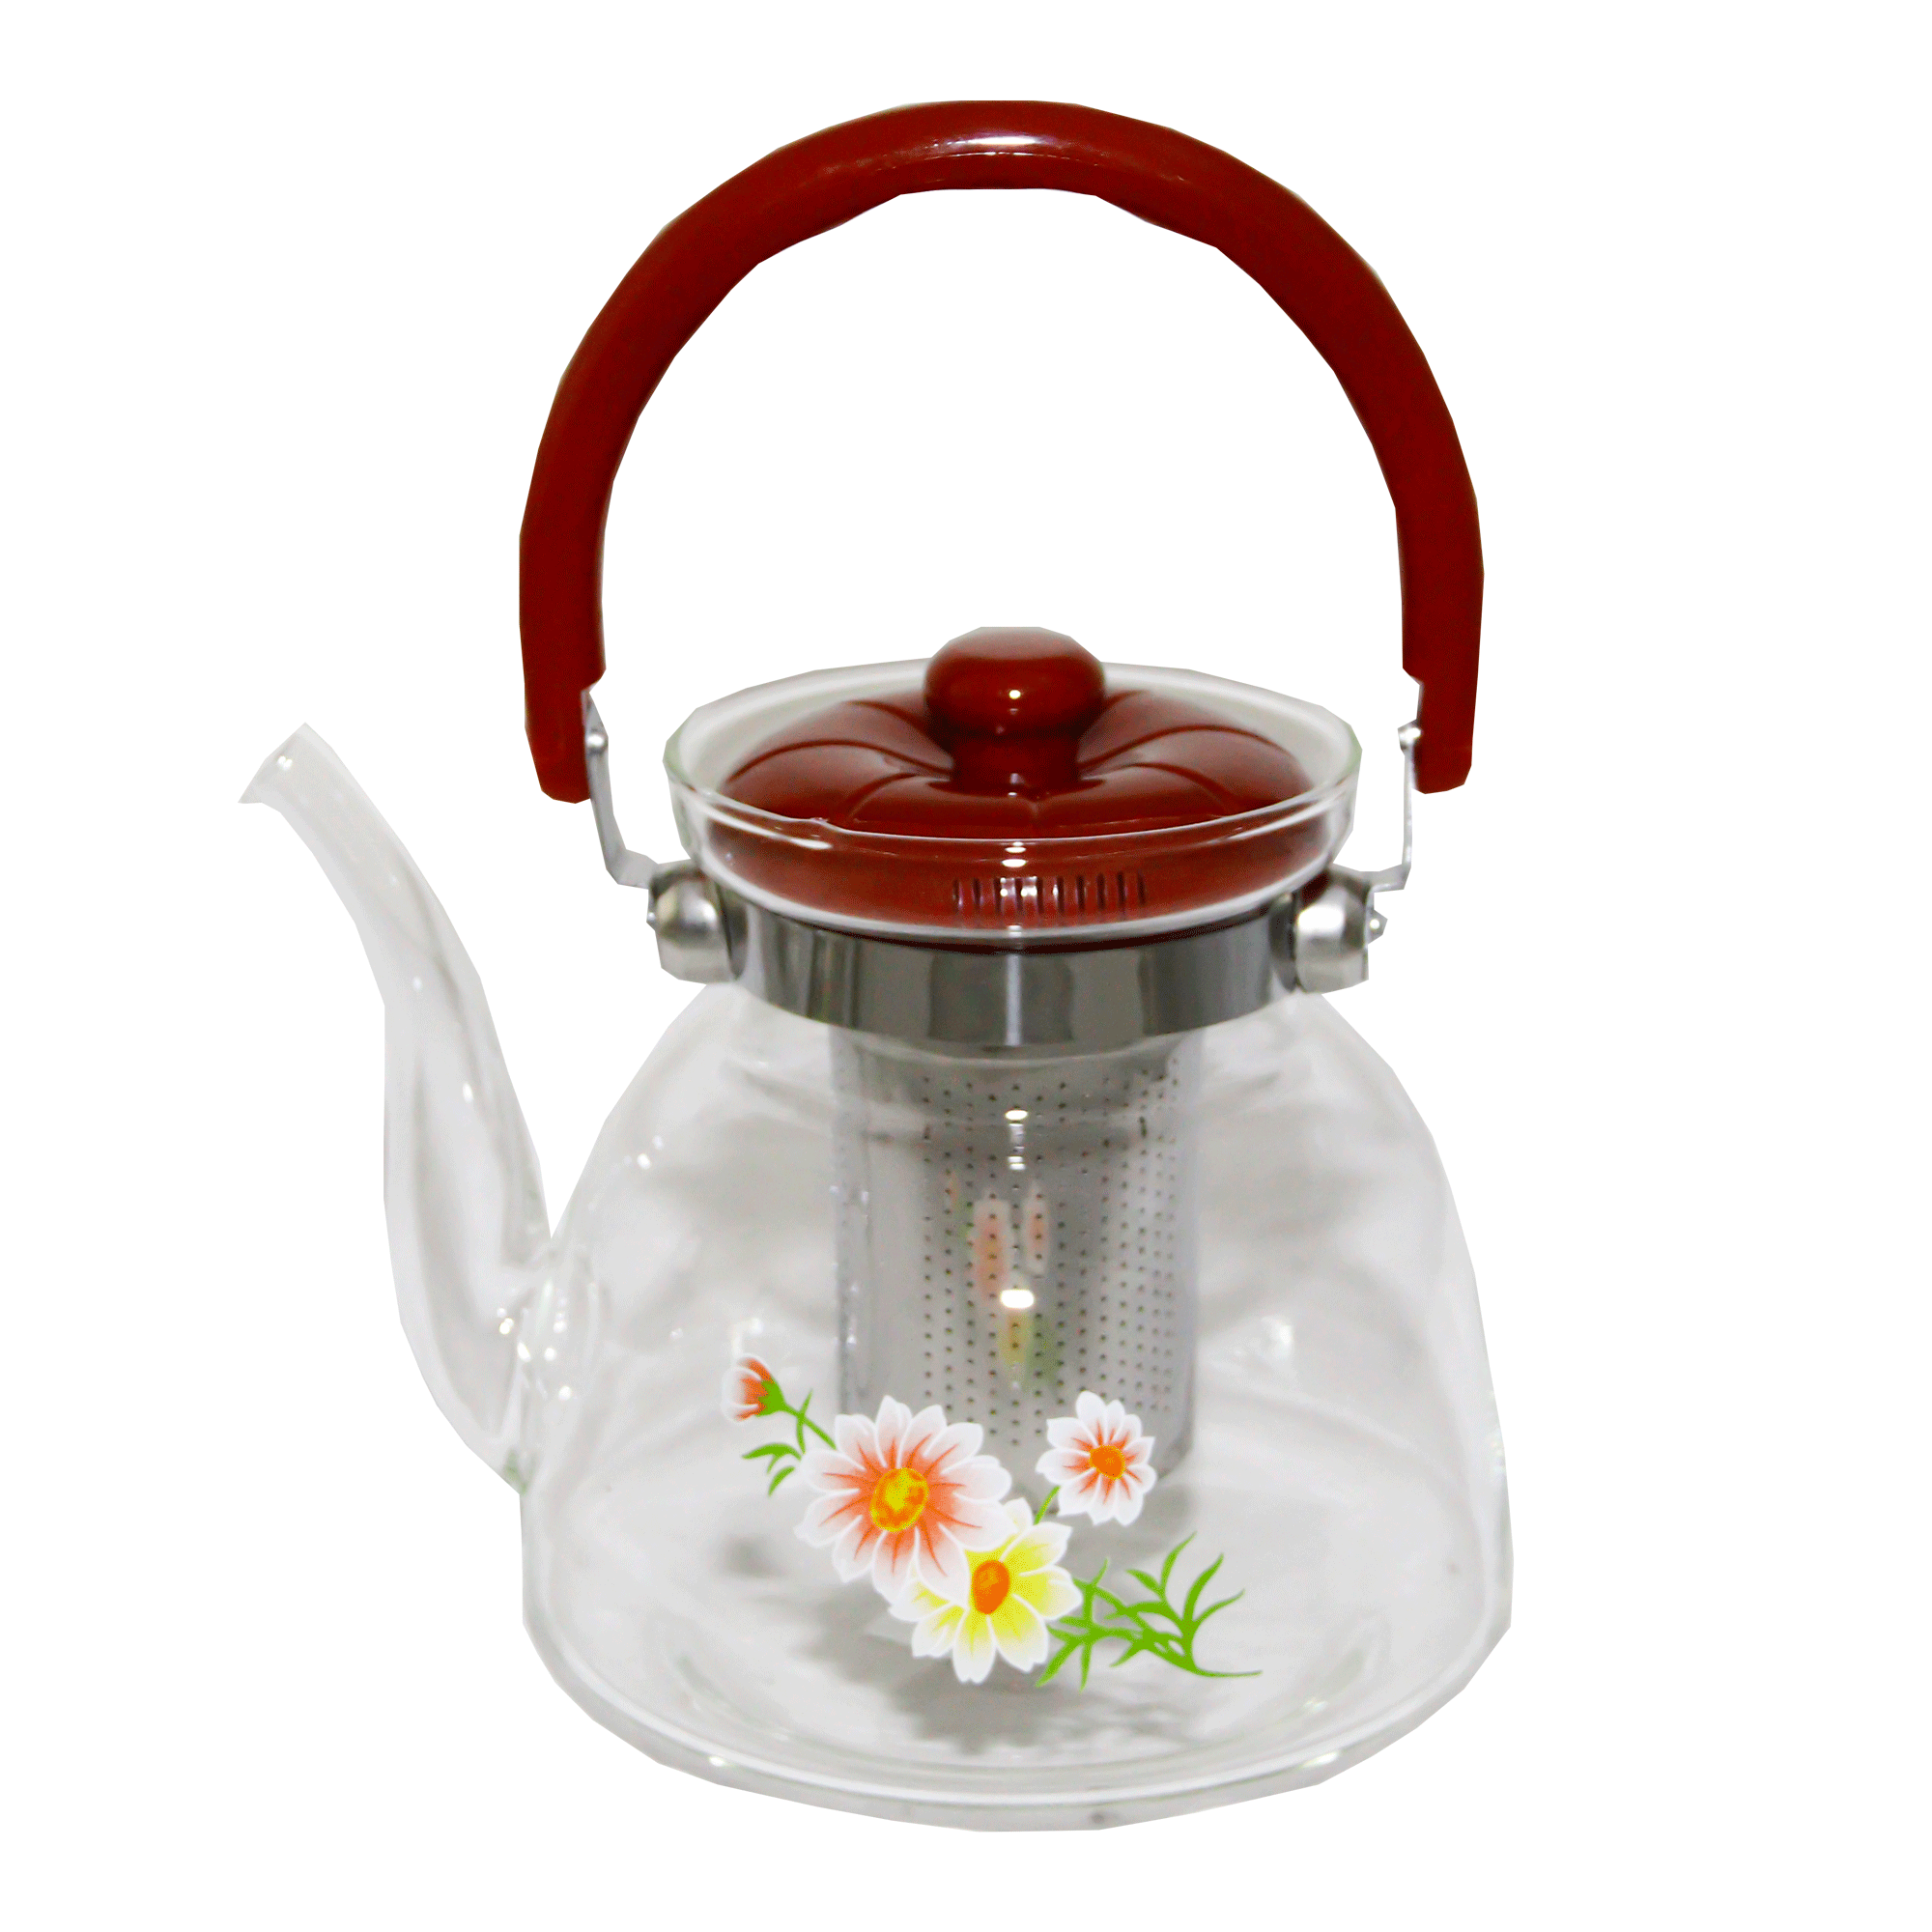 Kettle-Teapot YB115